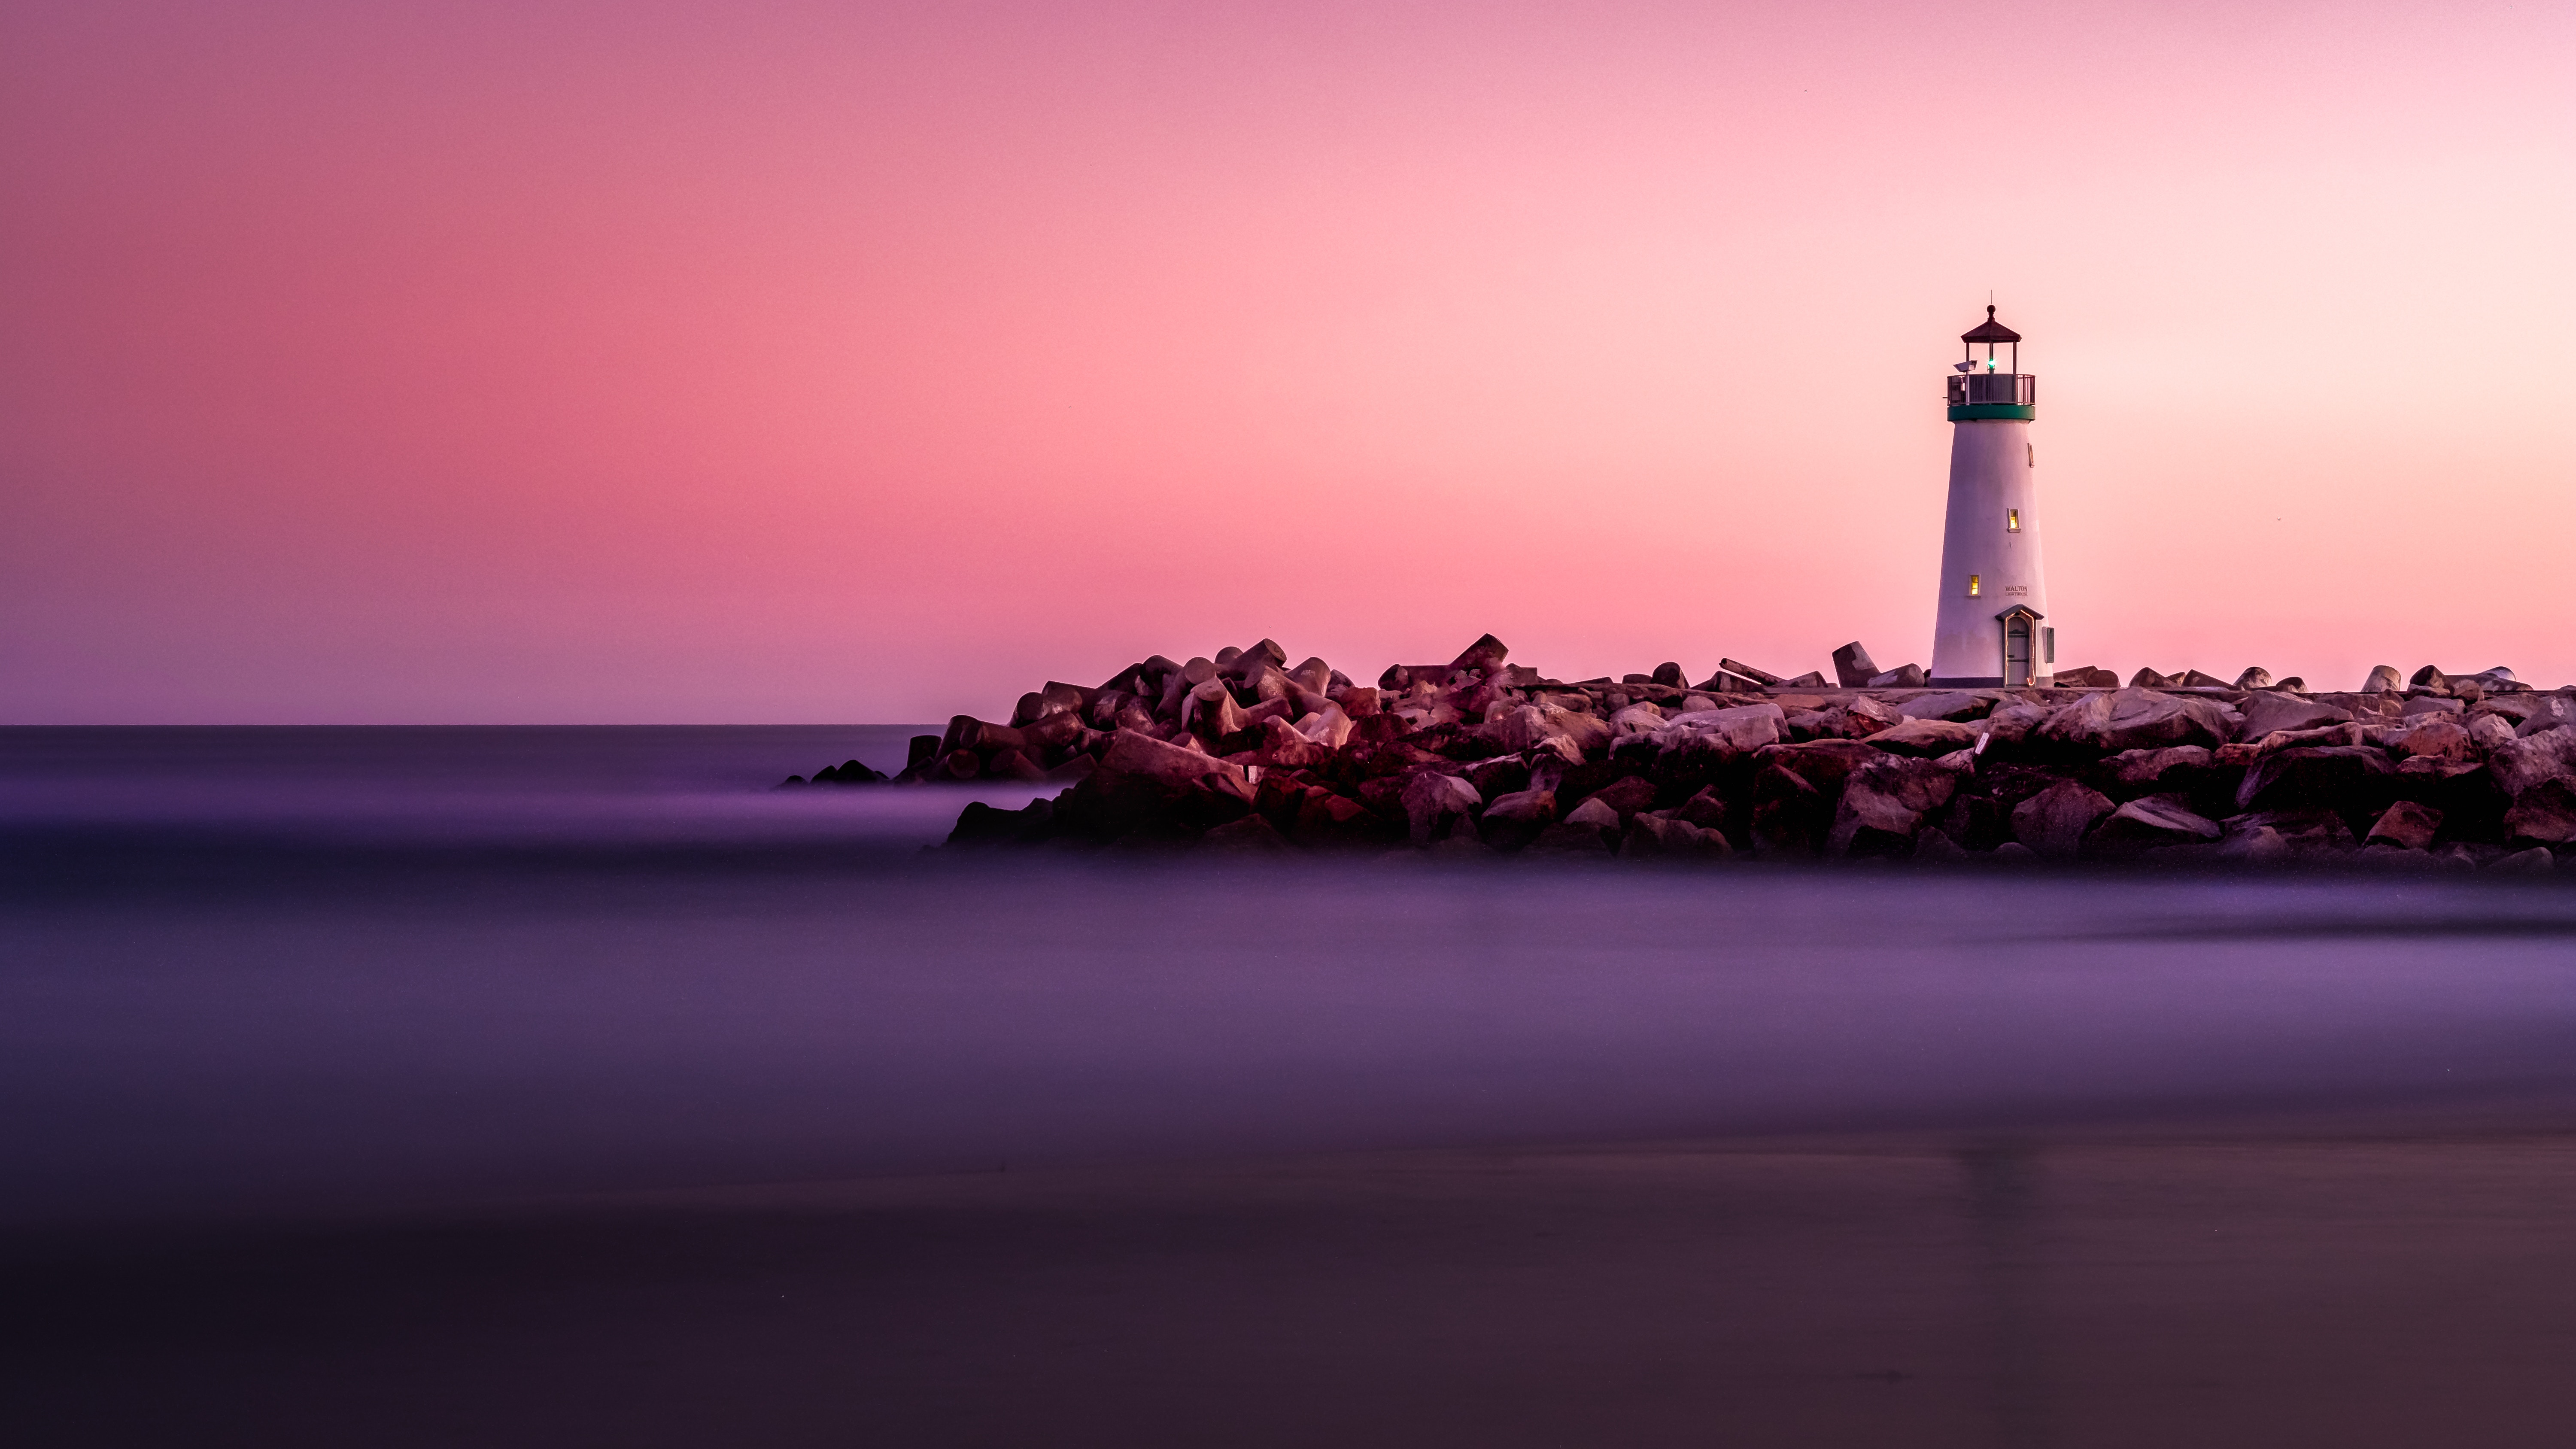 K, #Sunset, #Lighthouse